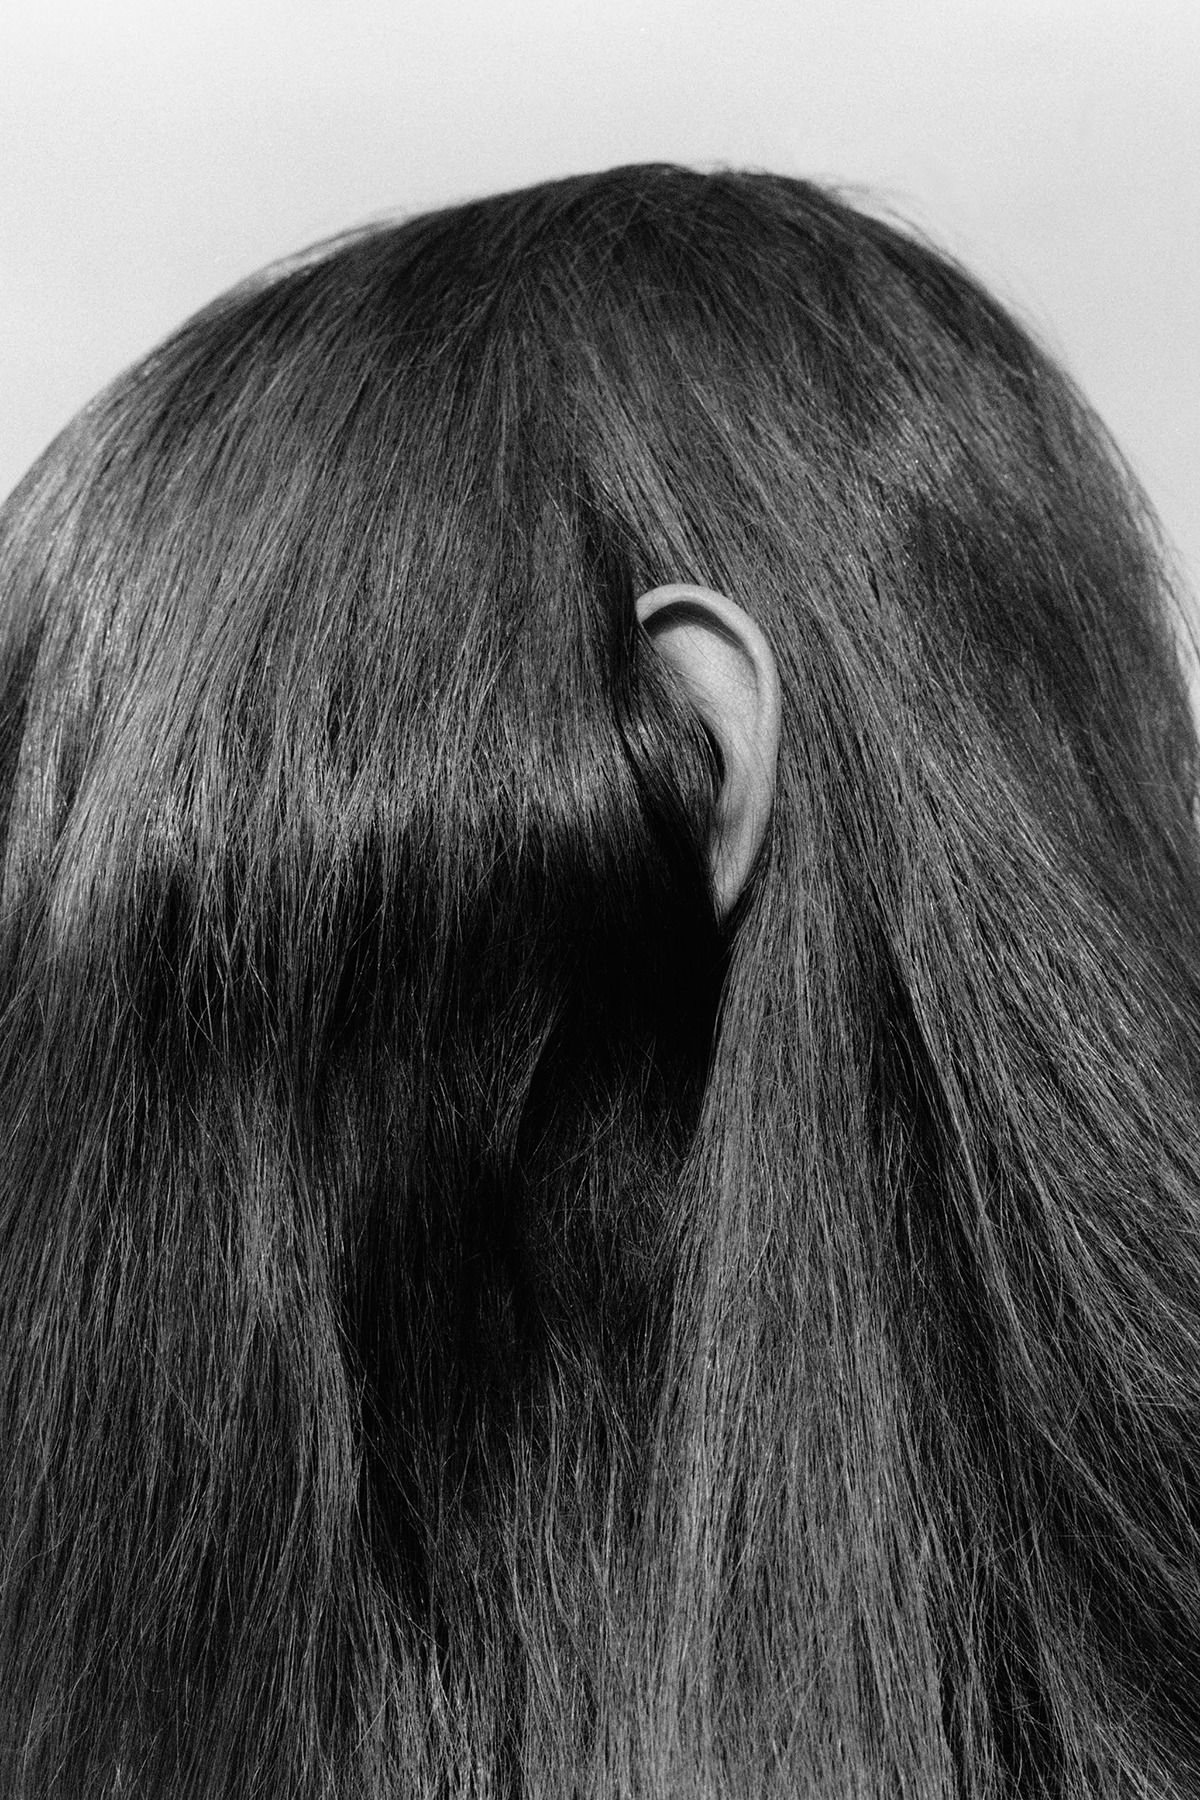 senyahearts: Estella Boersma by Jamie Hawkesworth in “Fade To Black” for  Vogue